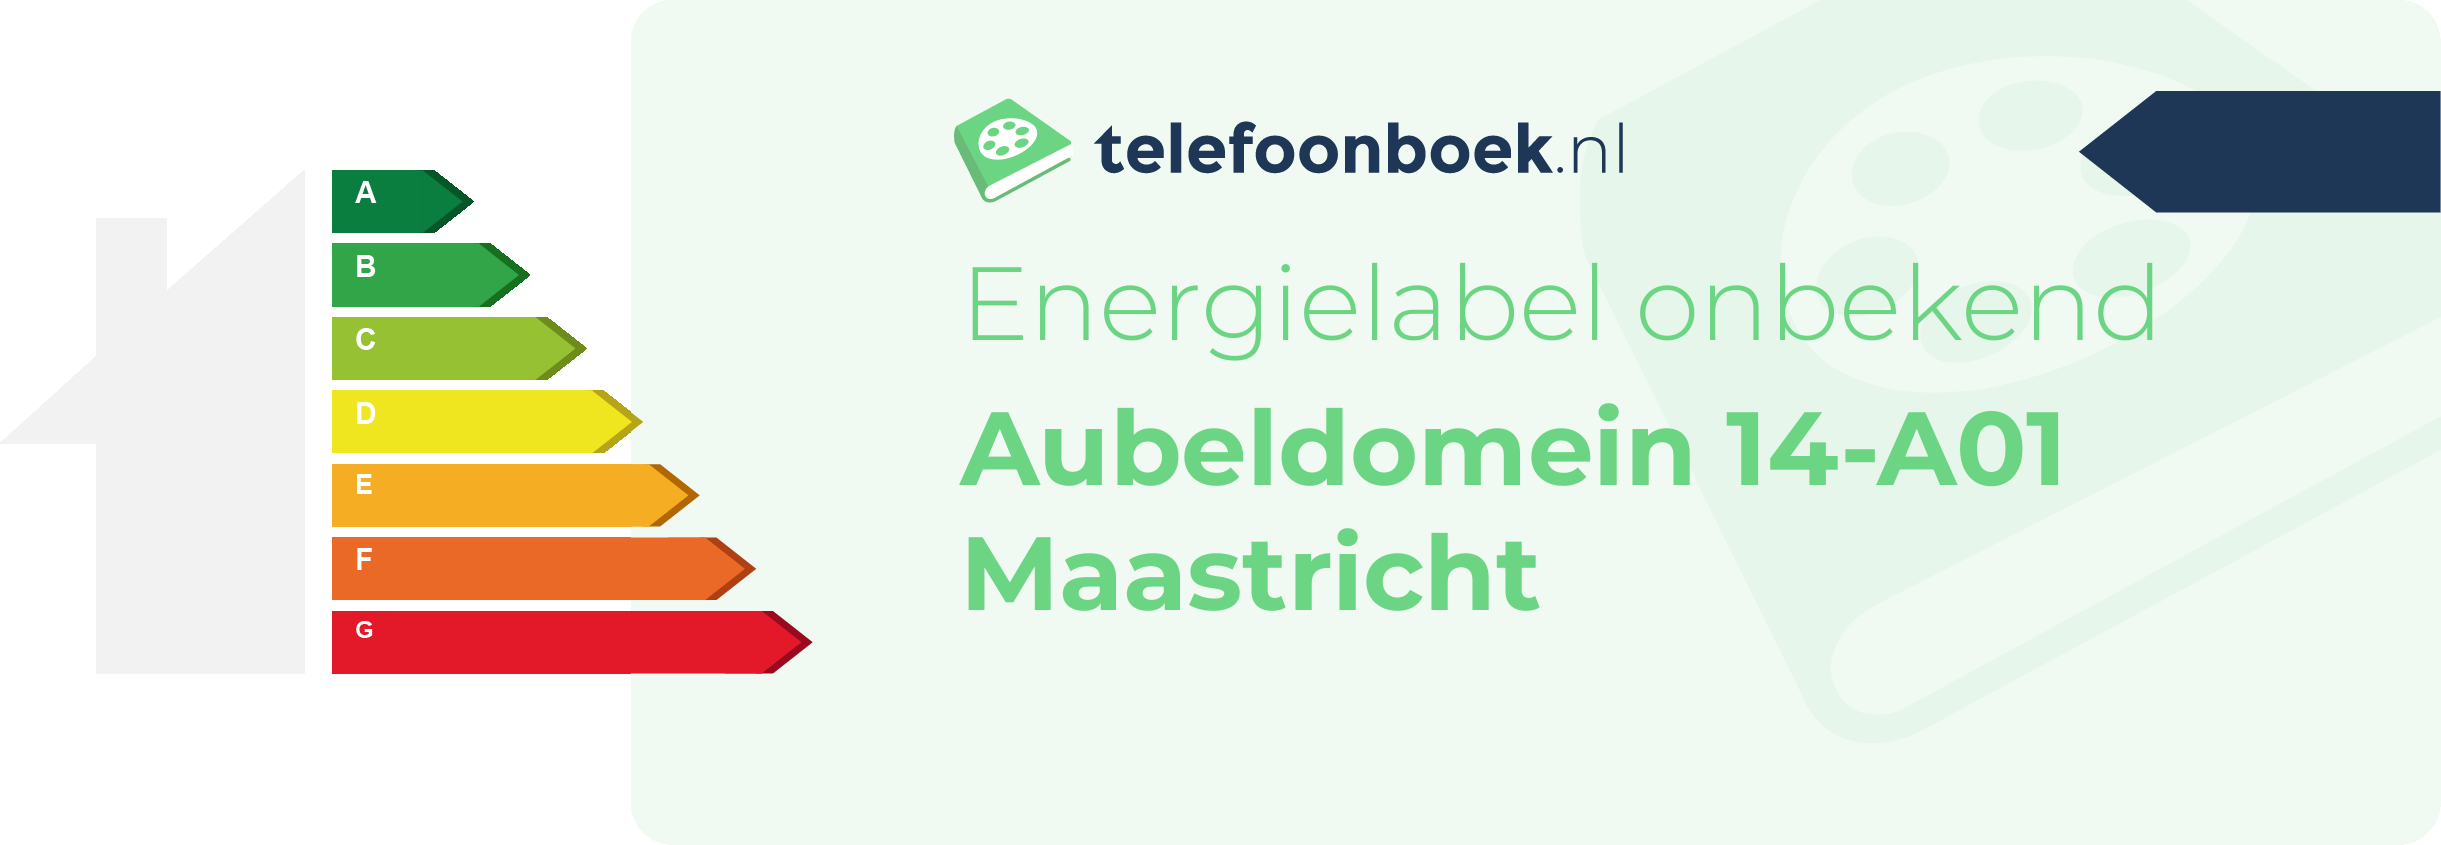 Energielabel Aubeldomein 14-A01 Maastricht